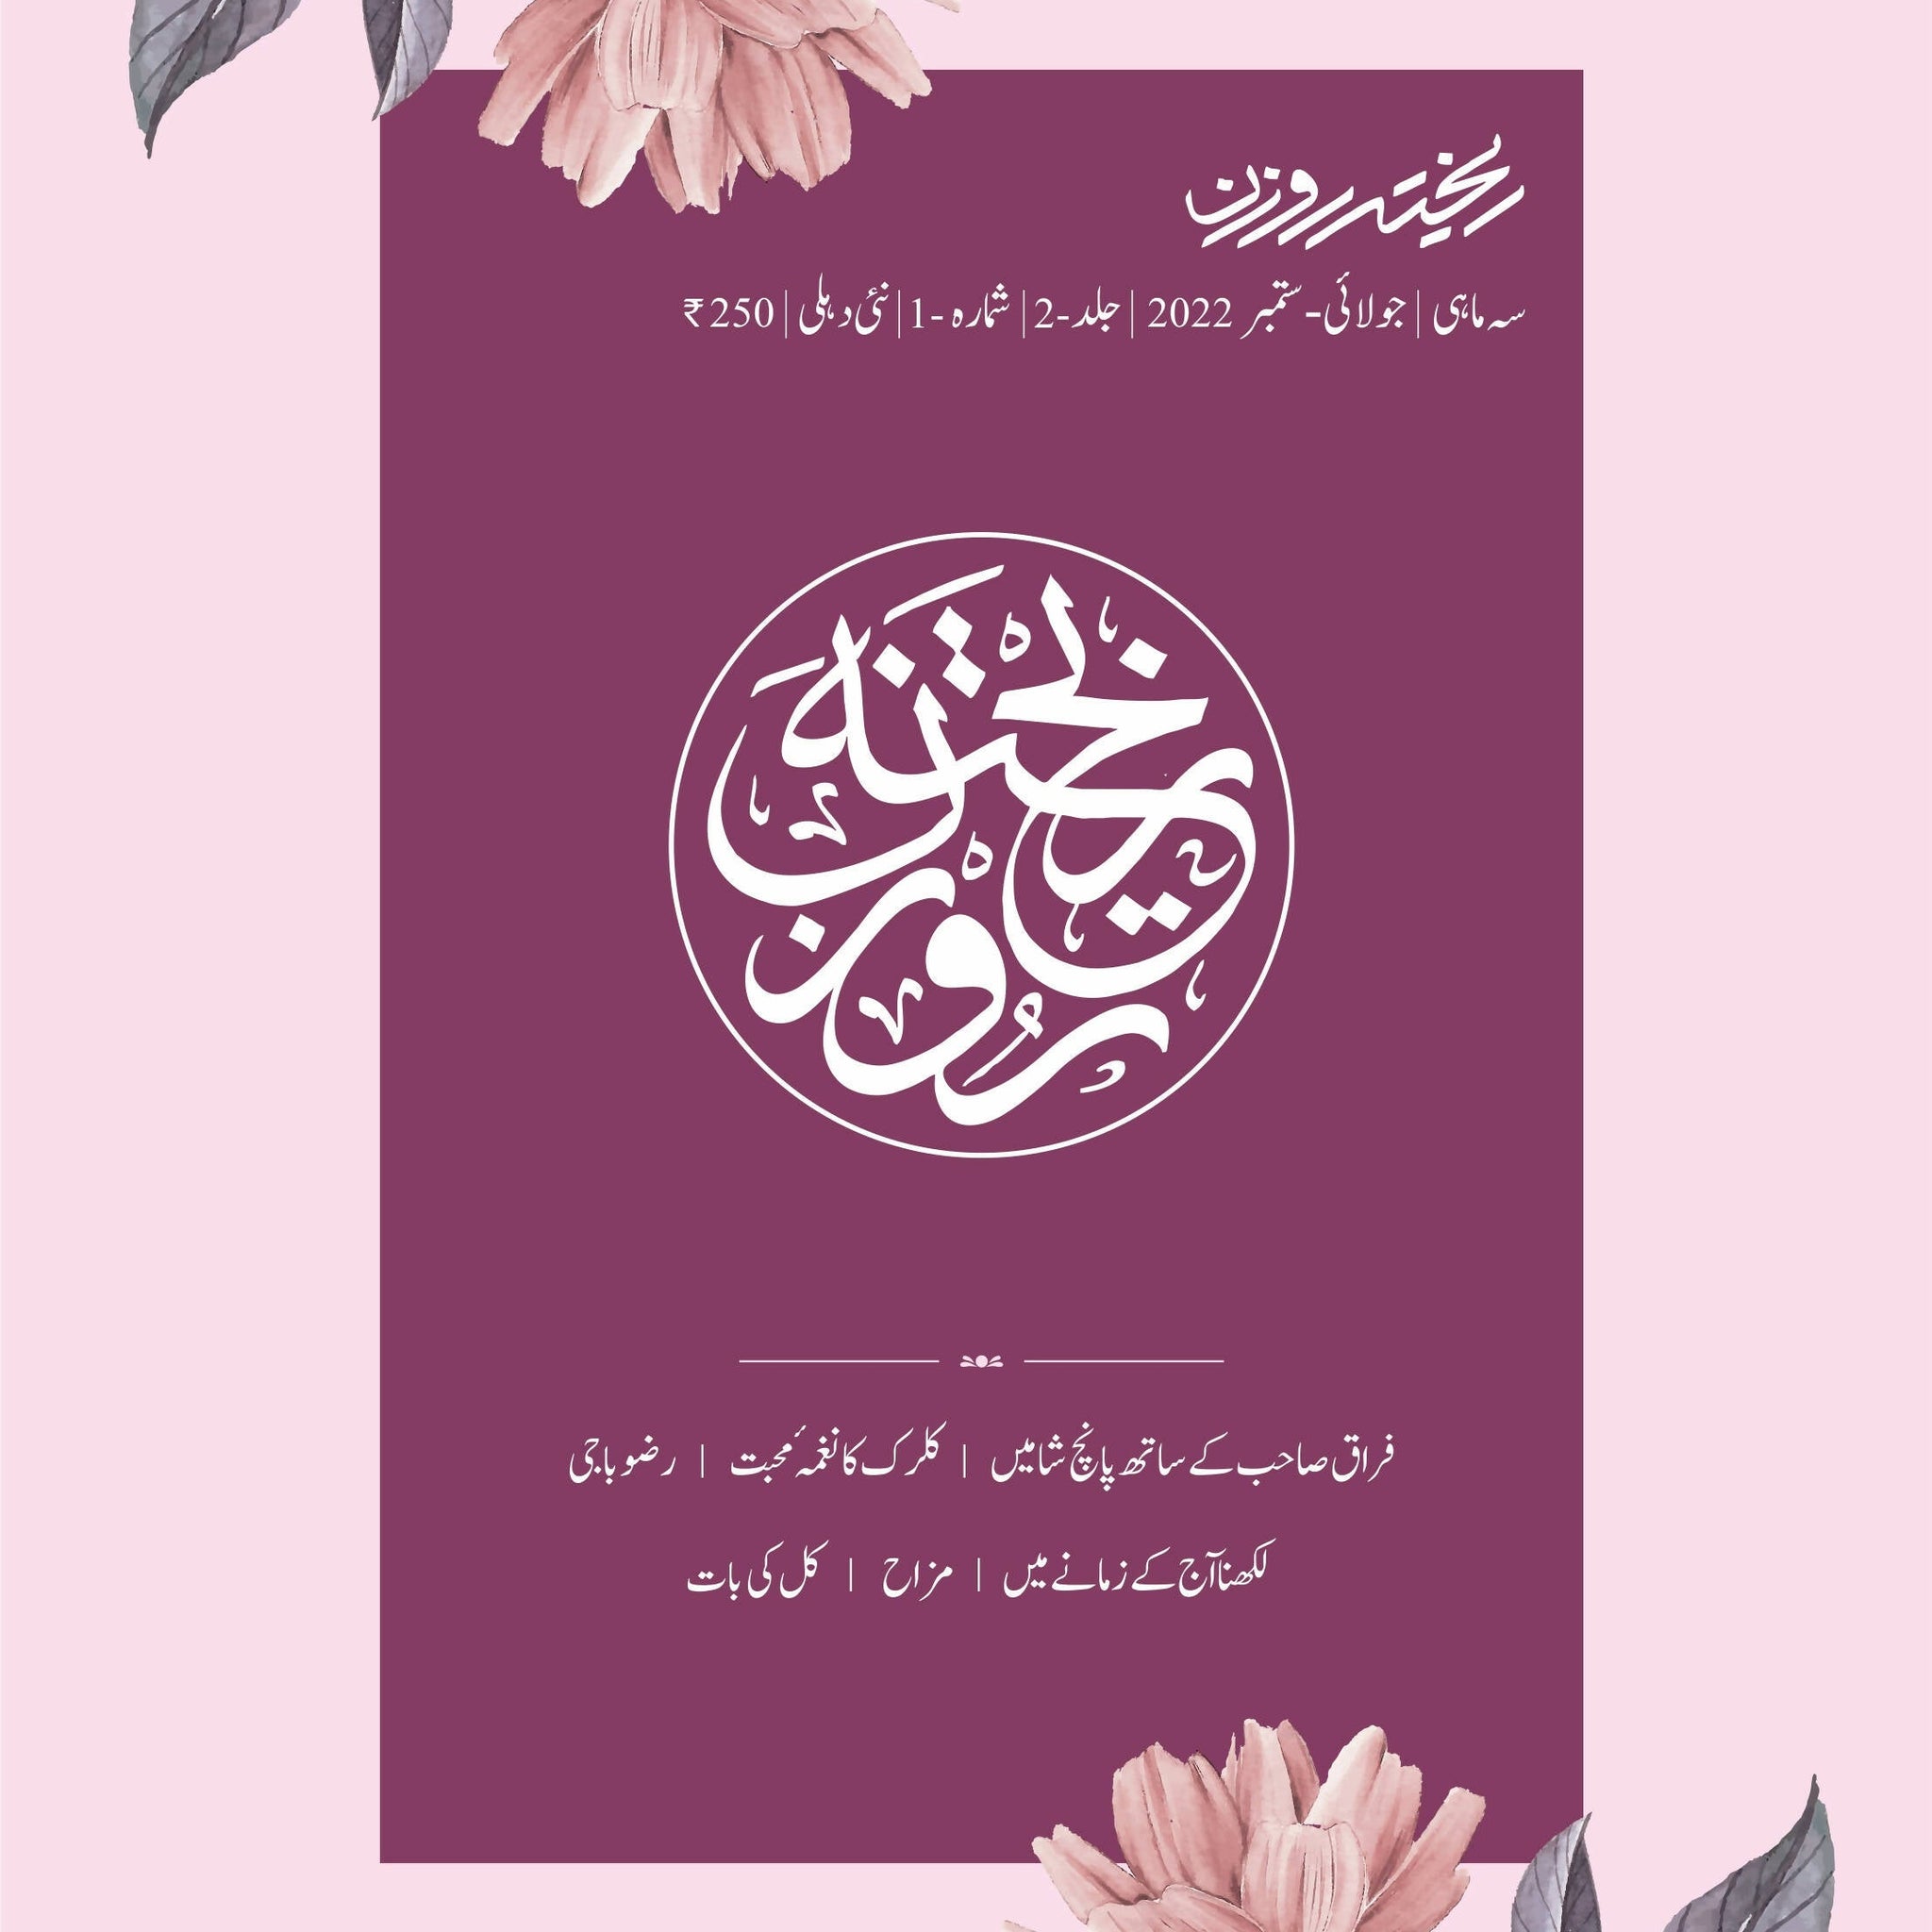 Rekhta Rauzan 5th Edition Urdu